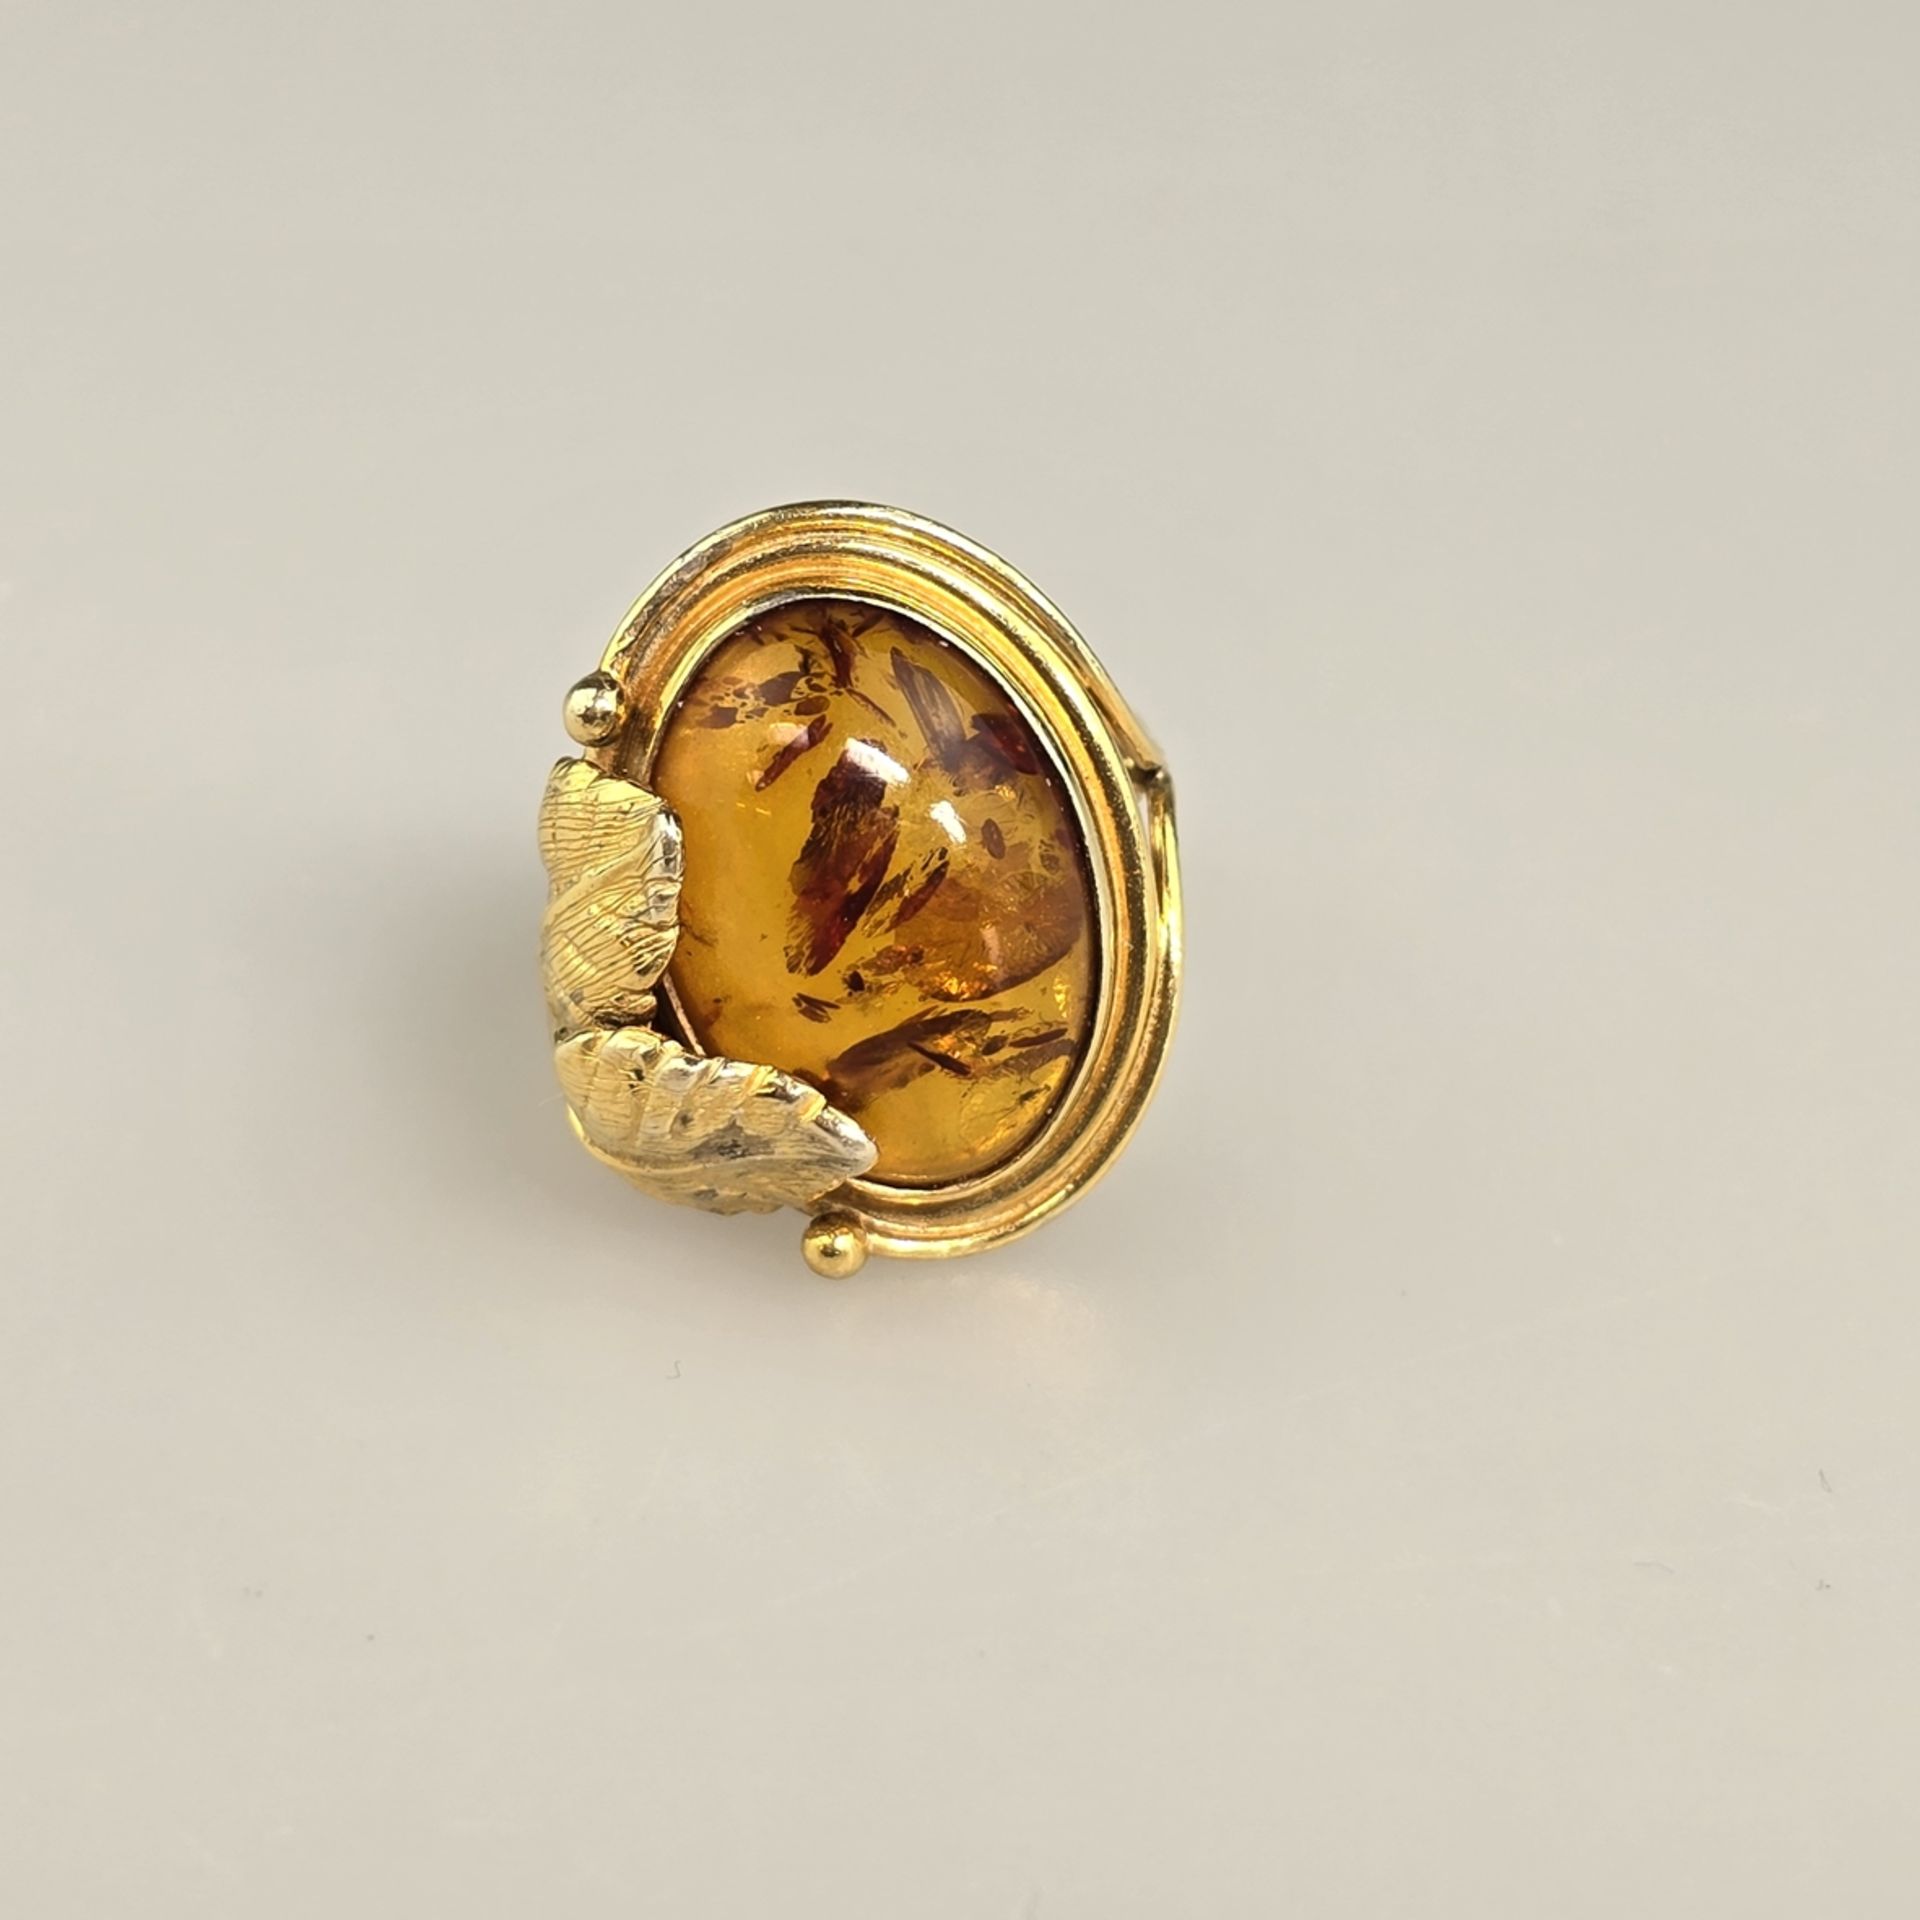 Bernsteinring - Silber 925/000, vergoldet, außen gestempelt, Bernstein von ca.18 x 12 mm, Ringgröße - Bild 4 aus 8